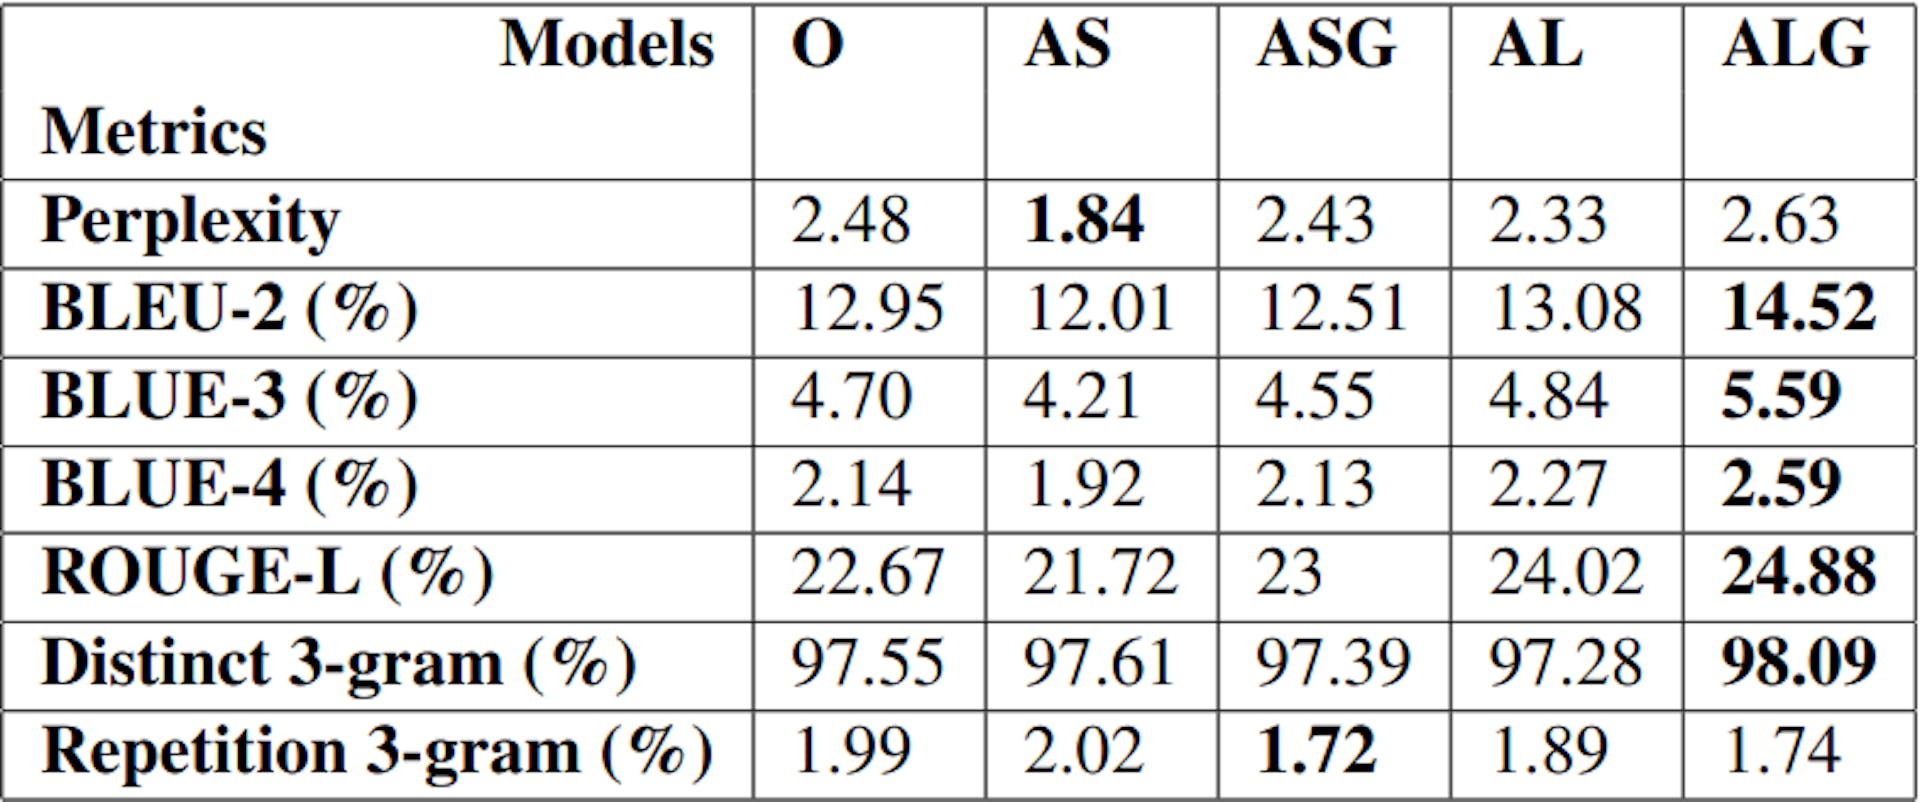 Tablo 1: GPT-3'te O, AS, ASG, AL, ALG olarak ince ayar yapılan 5 Hollywood olay örgüsü oluşturma modeli için ortak değerlendirme metriklerinden alınan puanlar (5.1)